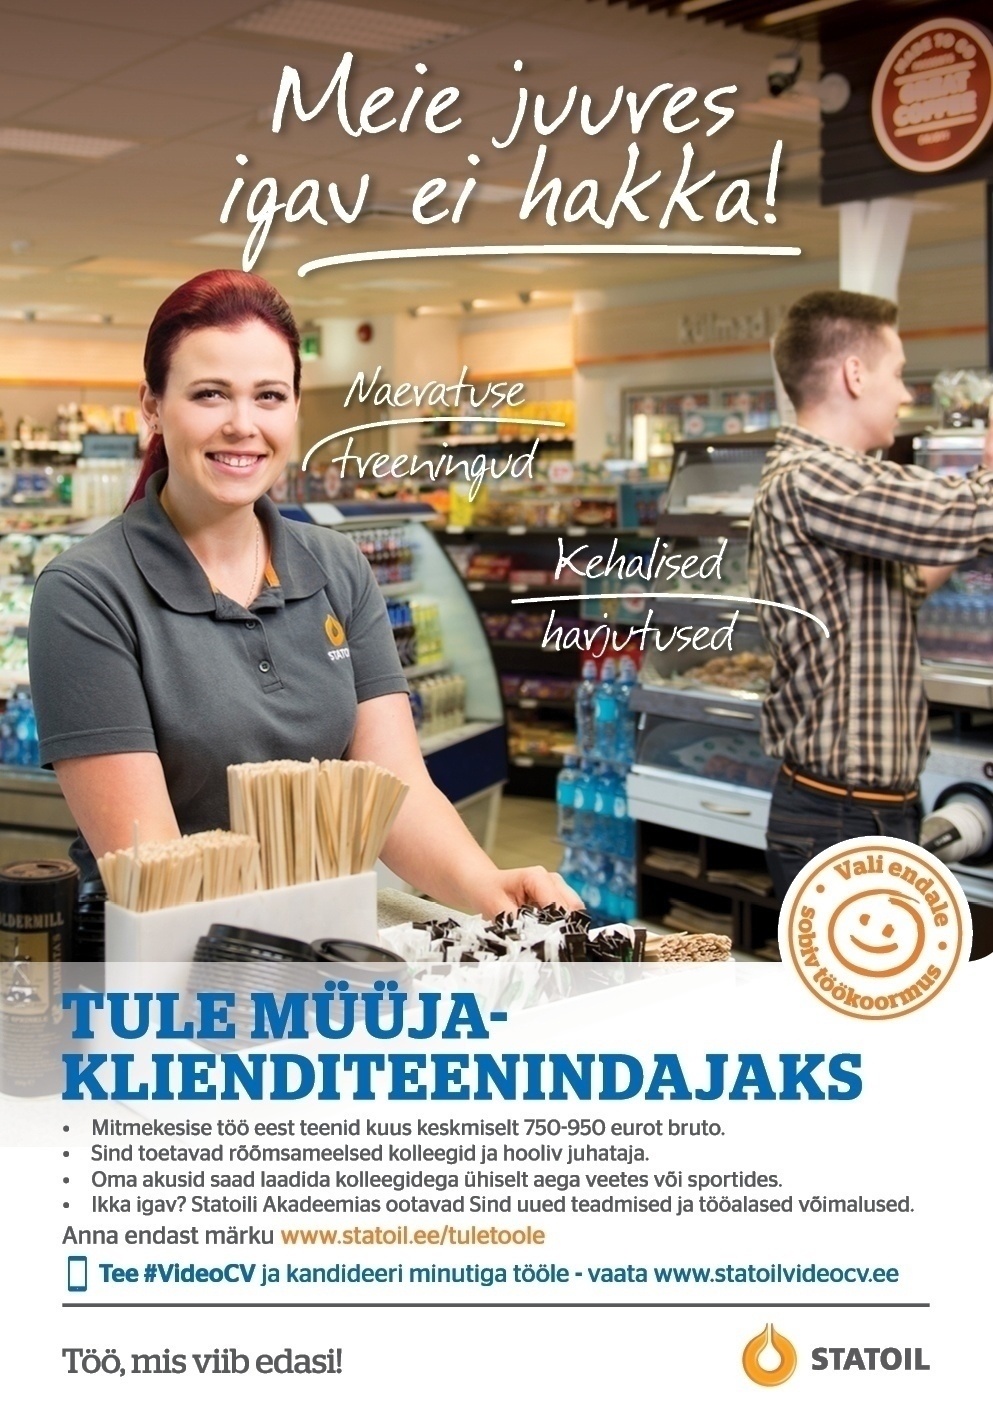 Circle K Eesti AS Müüja-klienditeenindaja Sikupilli teenindusjaama